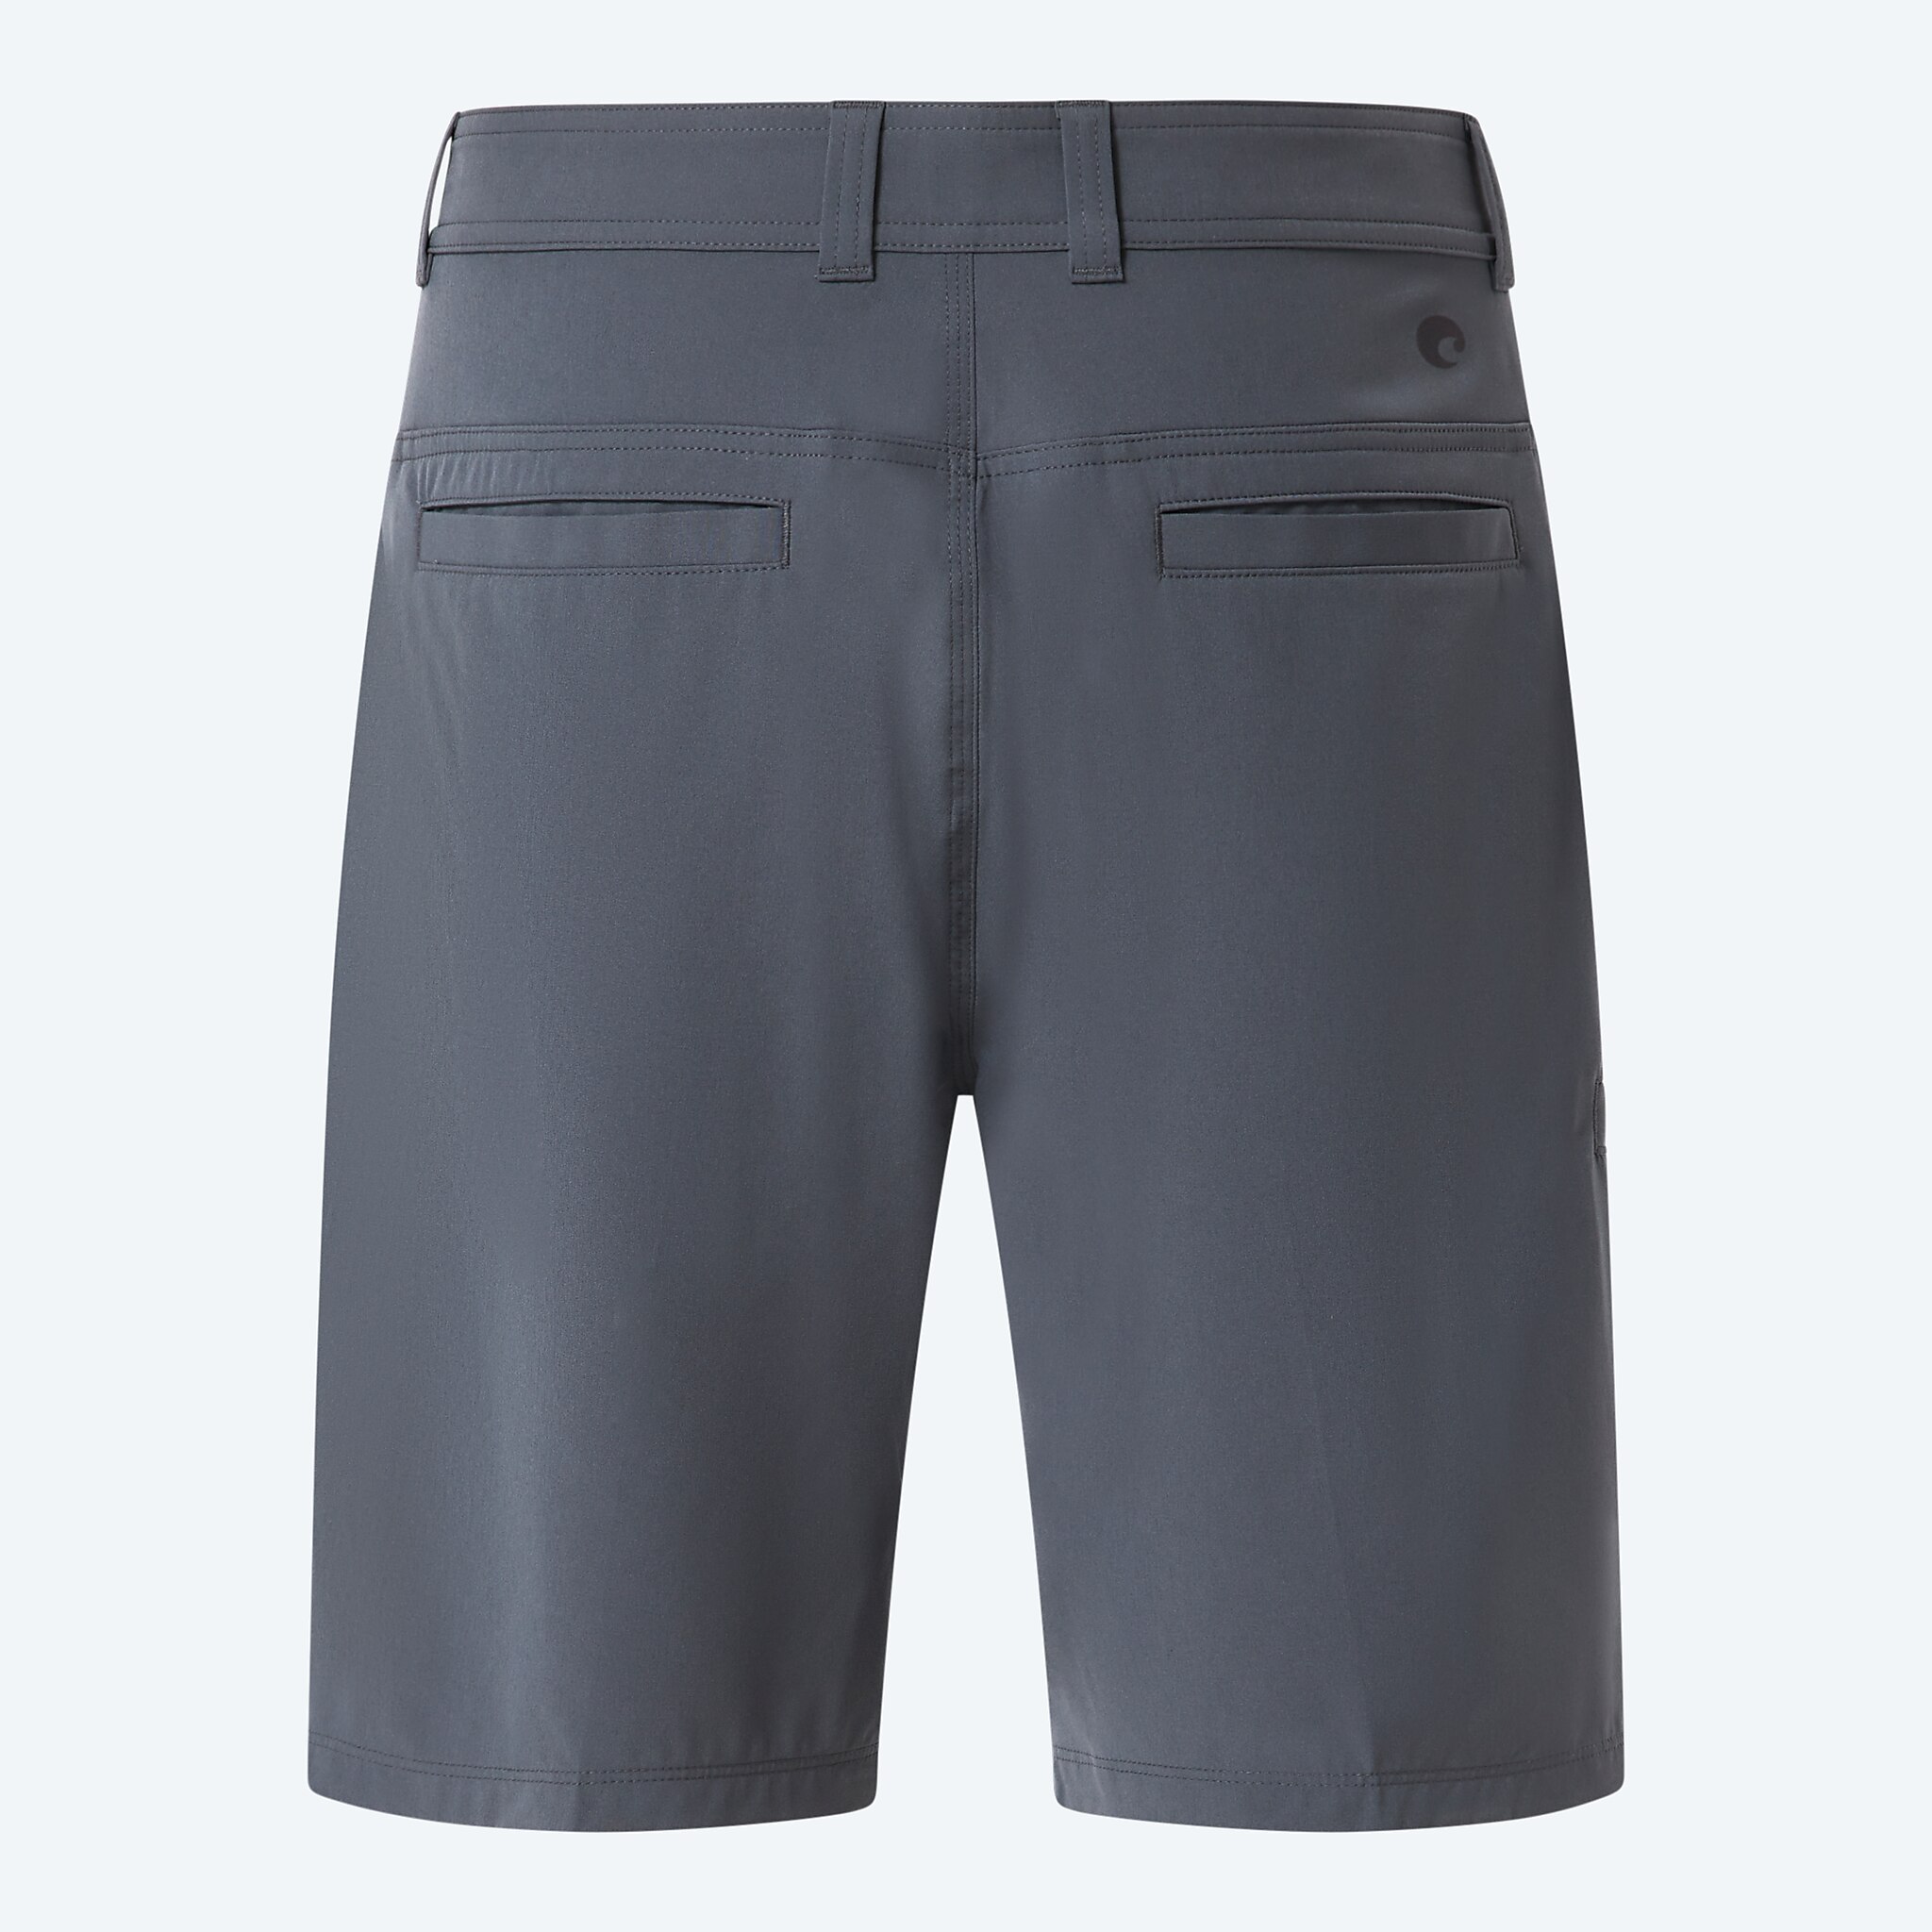 Costa Walker Hybrid Shorts, 38, Shark